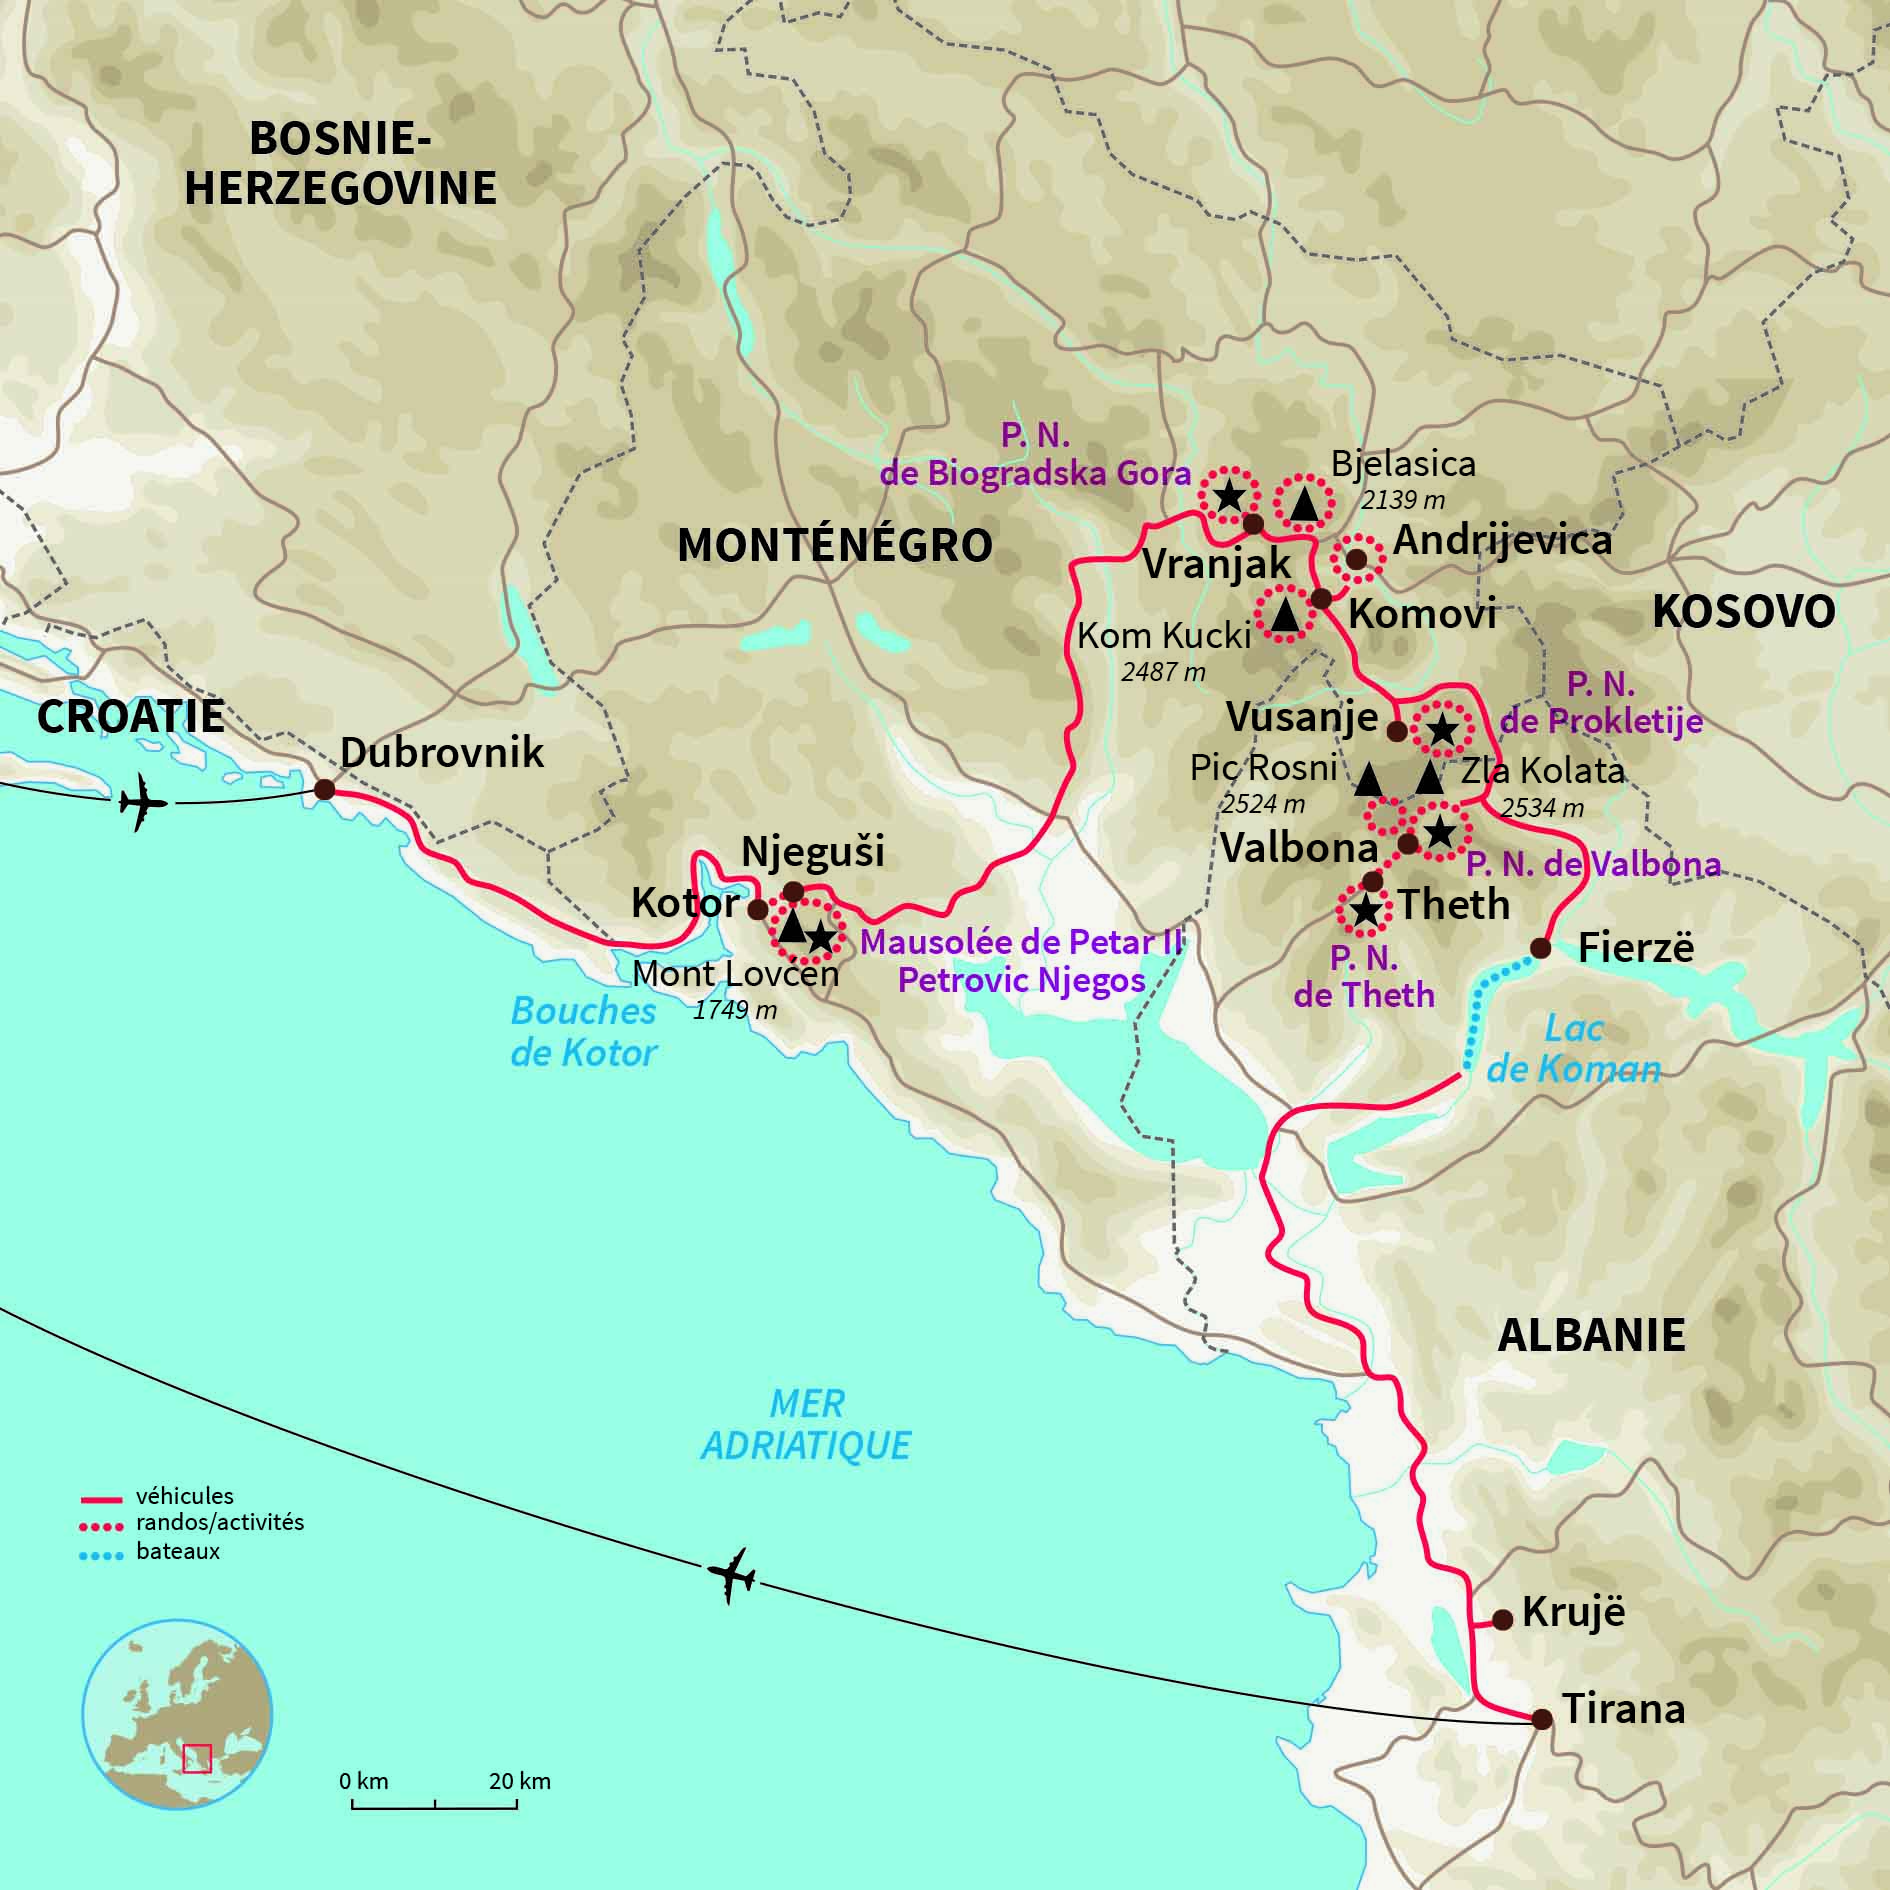 Carte Monténégro : Des bouches de Kotor aux montagnes albanaises